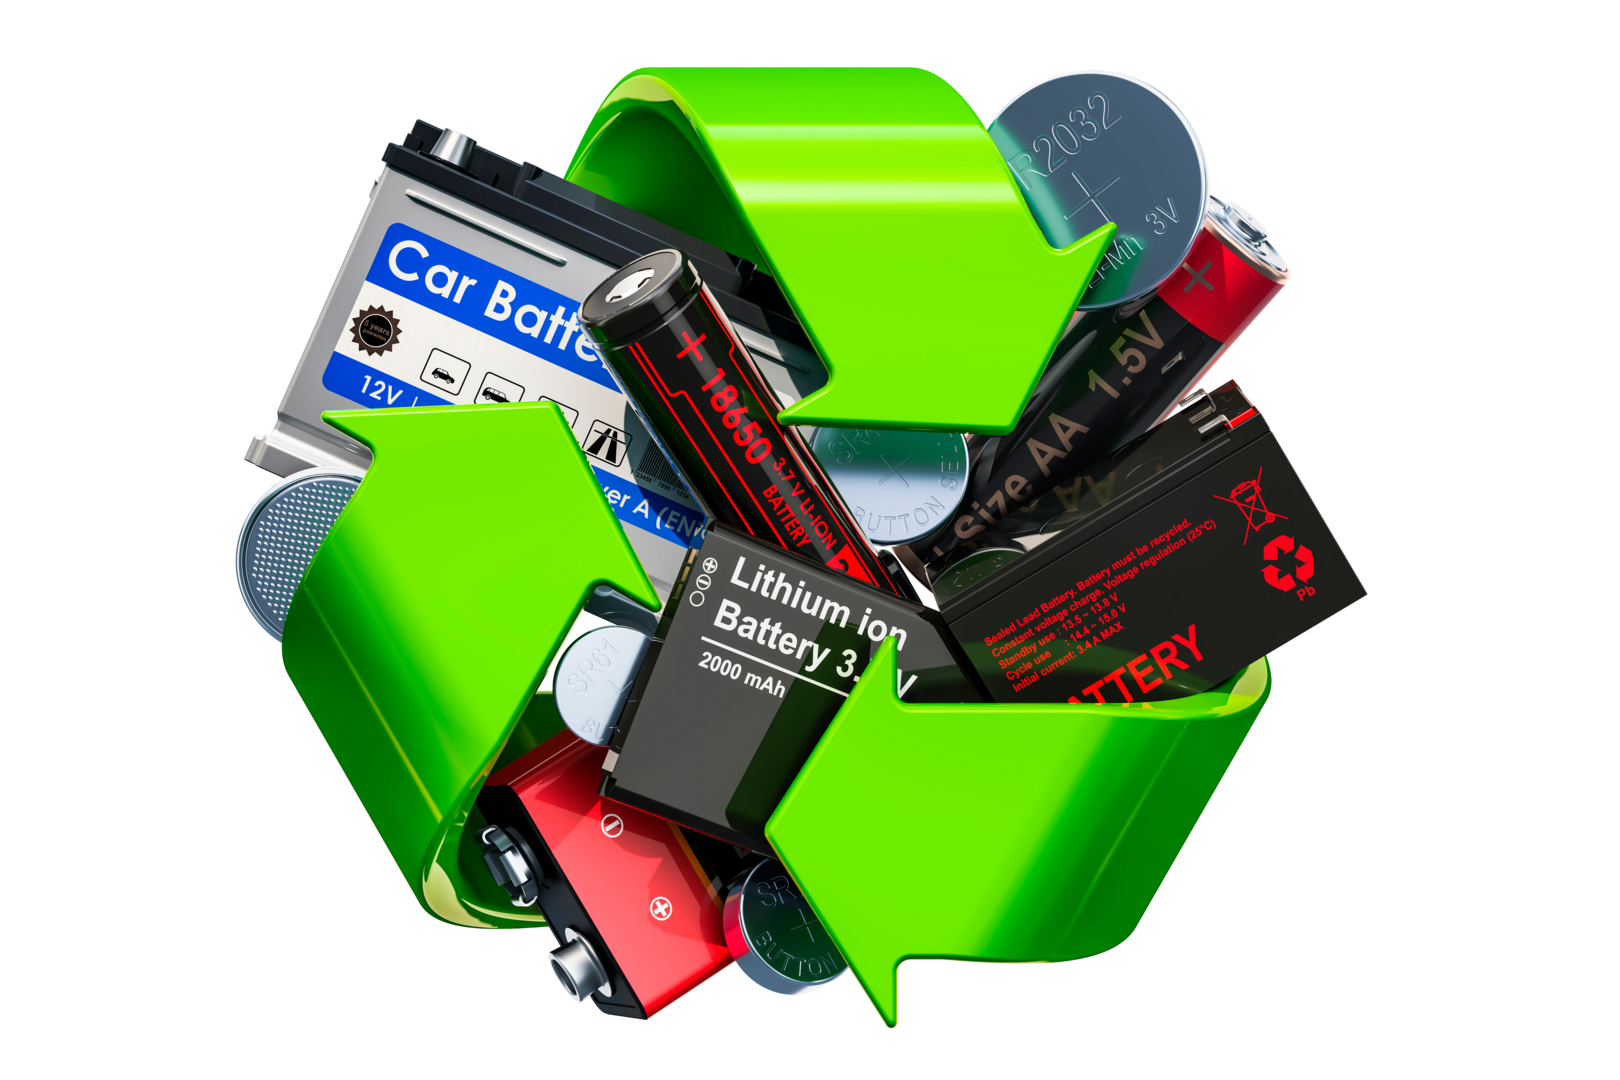 Recycle batteries. Утилизация батареек. Переработка аккумуляторов. Батарейки аккумуляторы отходы. Отработанные аккумуляторы.